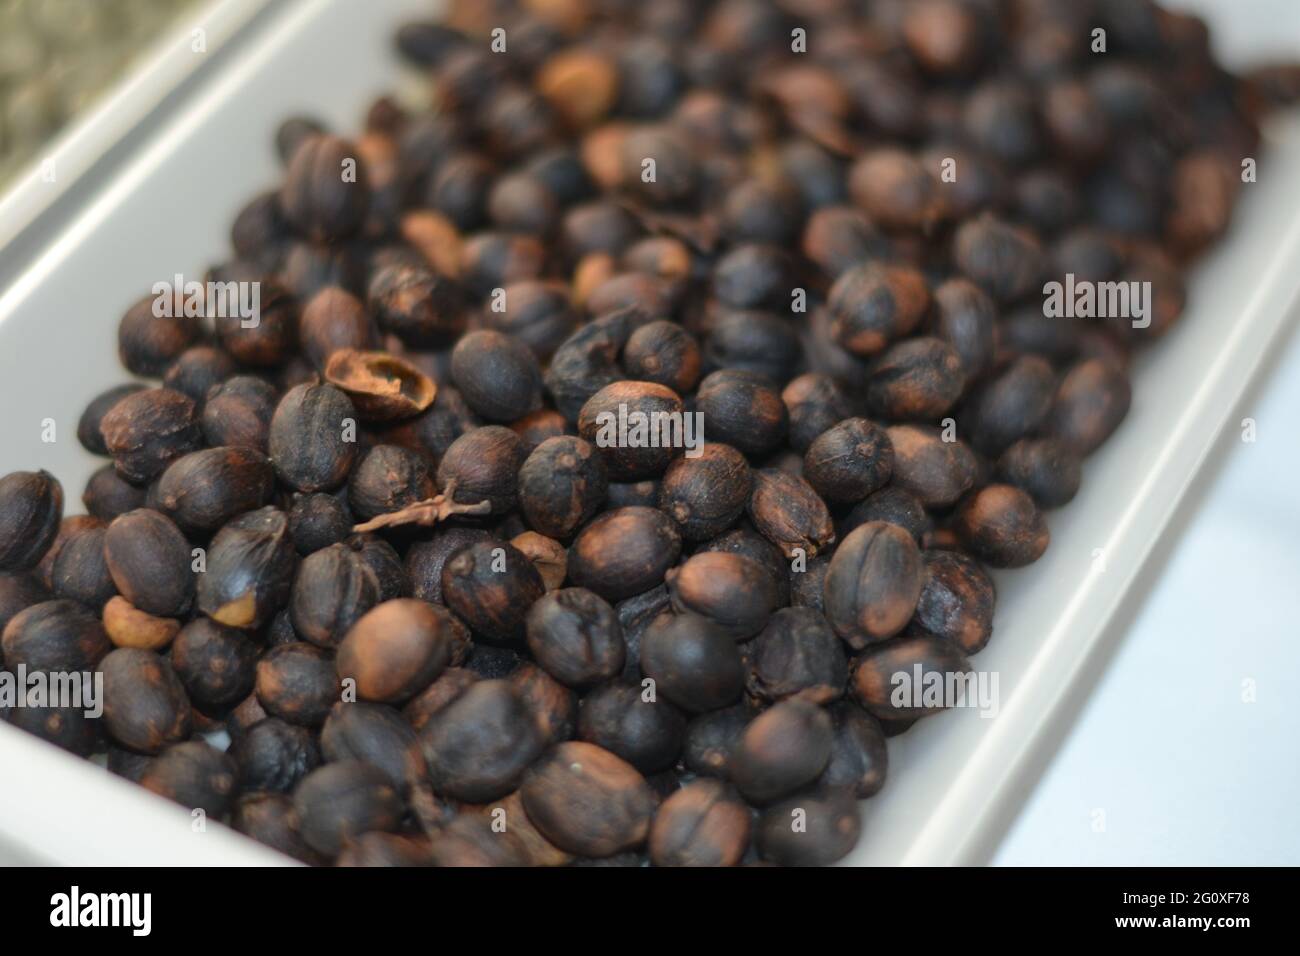 Nahaufnahme der geernteten Kaffeebohnen, die zum Mahlen bereit sind Stockfoto